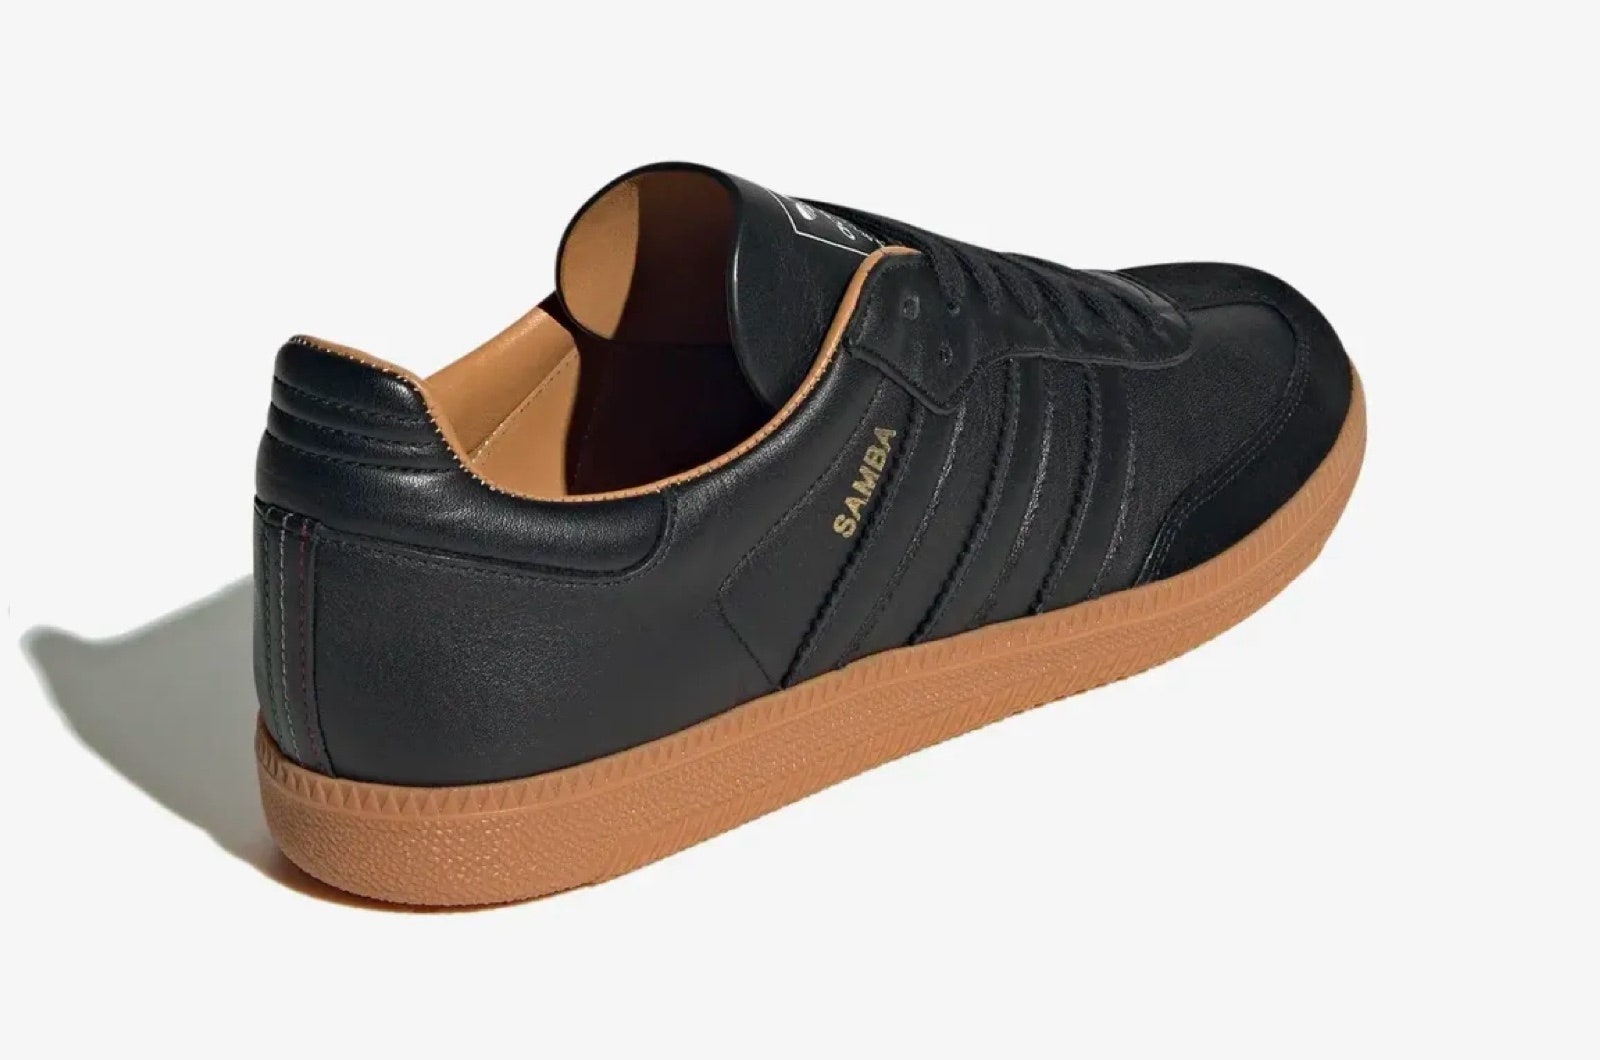 Adidas Samba OG ‘Black Gum